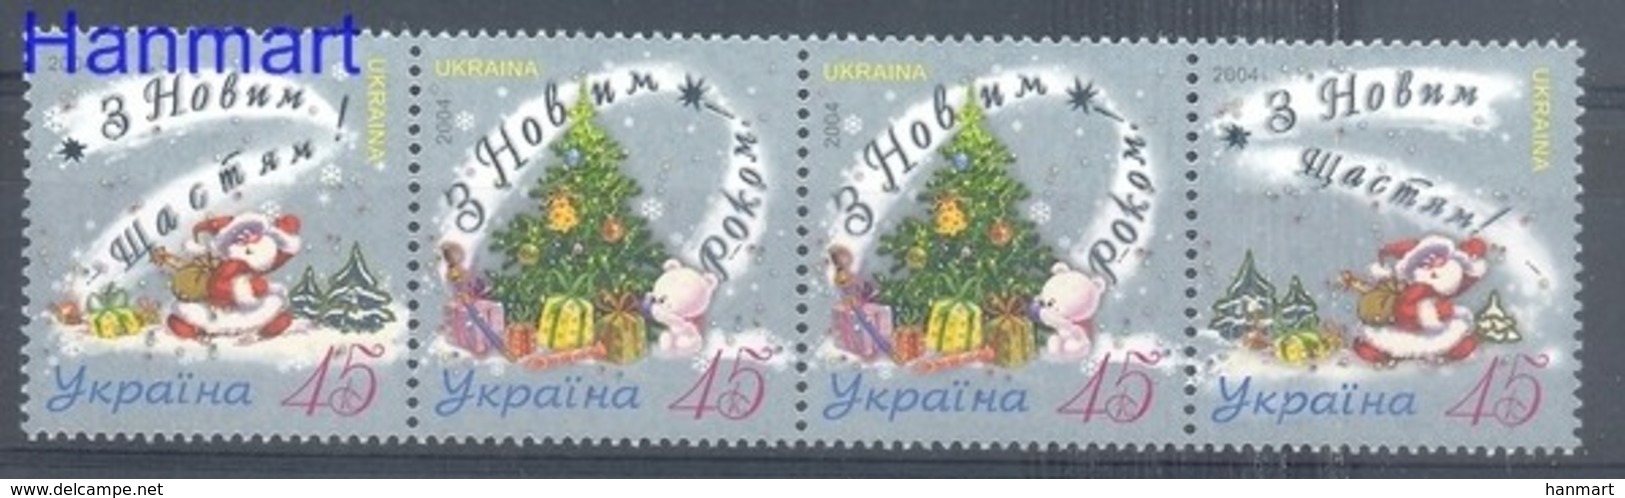 Ukraine 2004 Mi 683-685 MNH ( ZE4 UKRvie683-685 ) - Ukraine